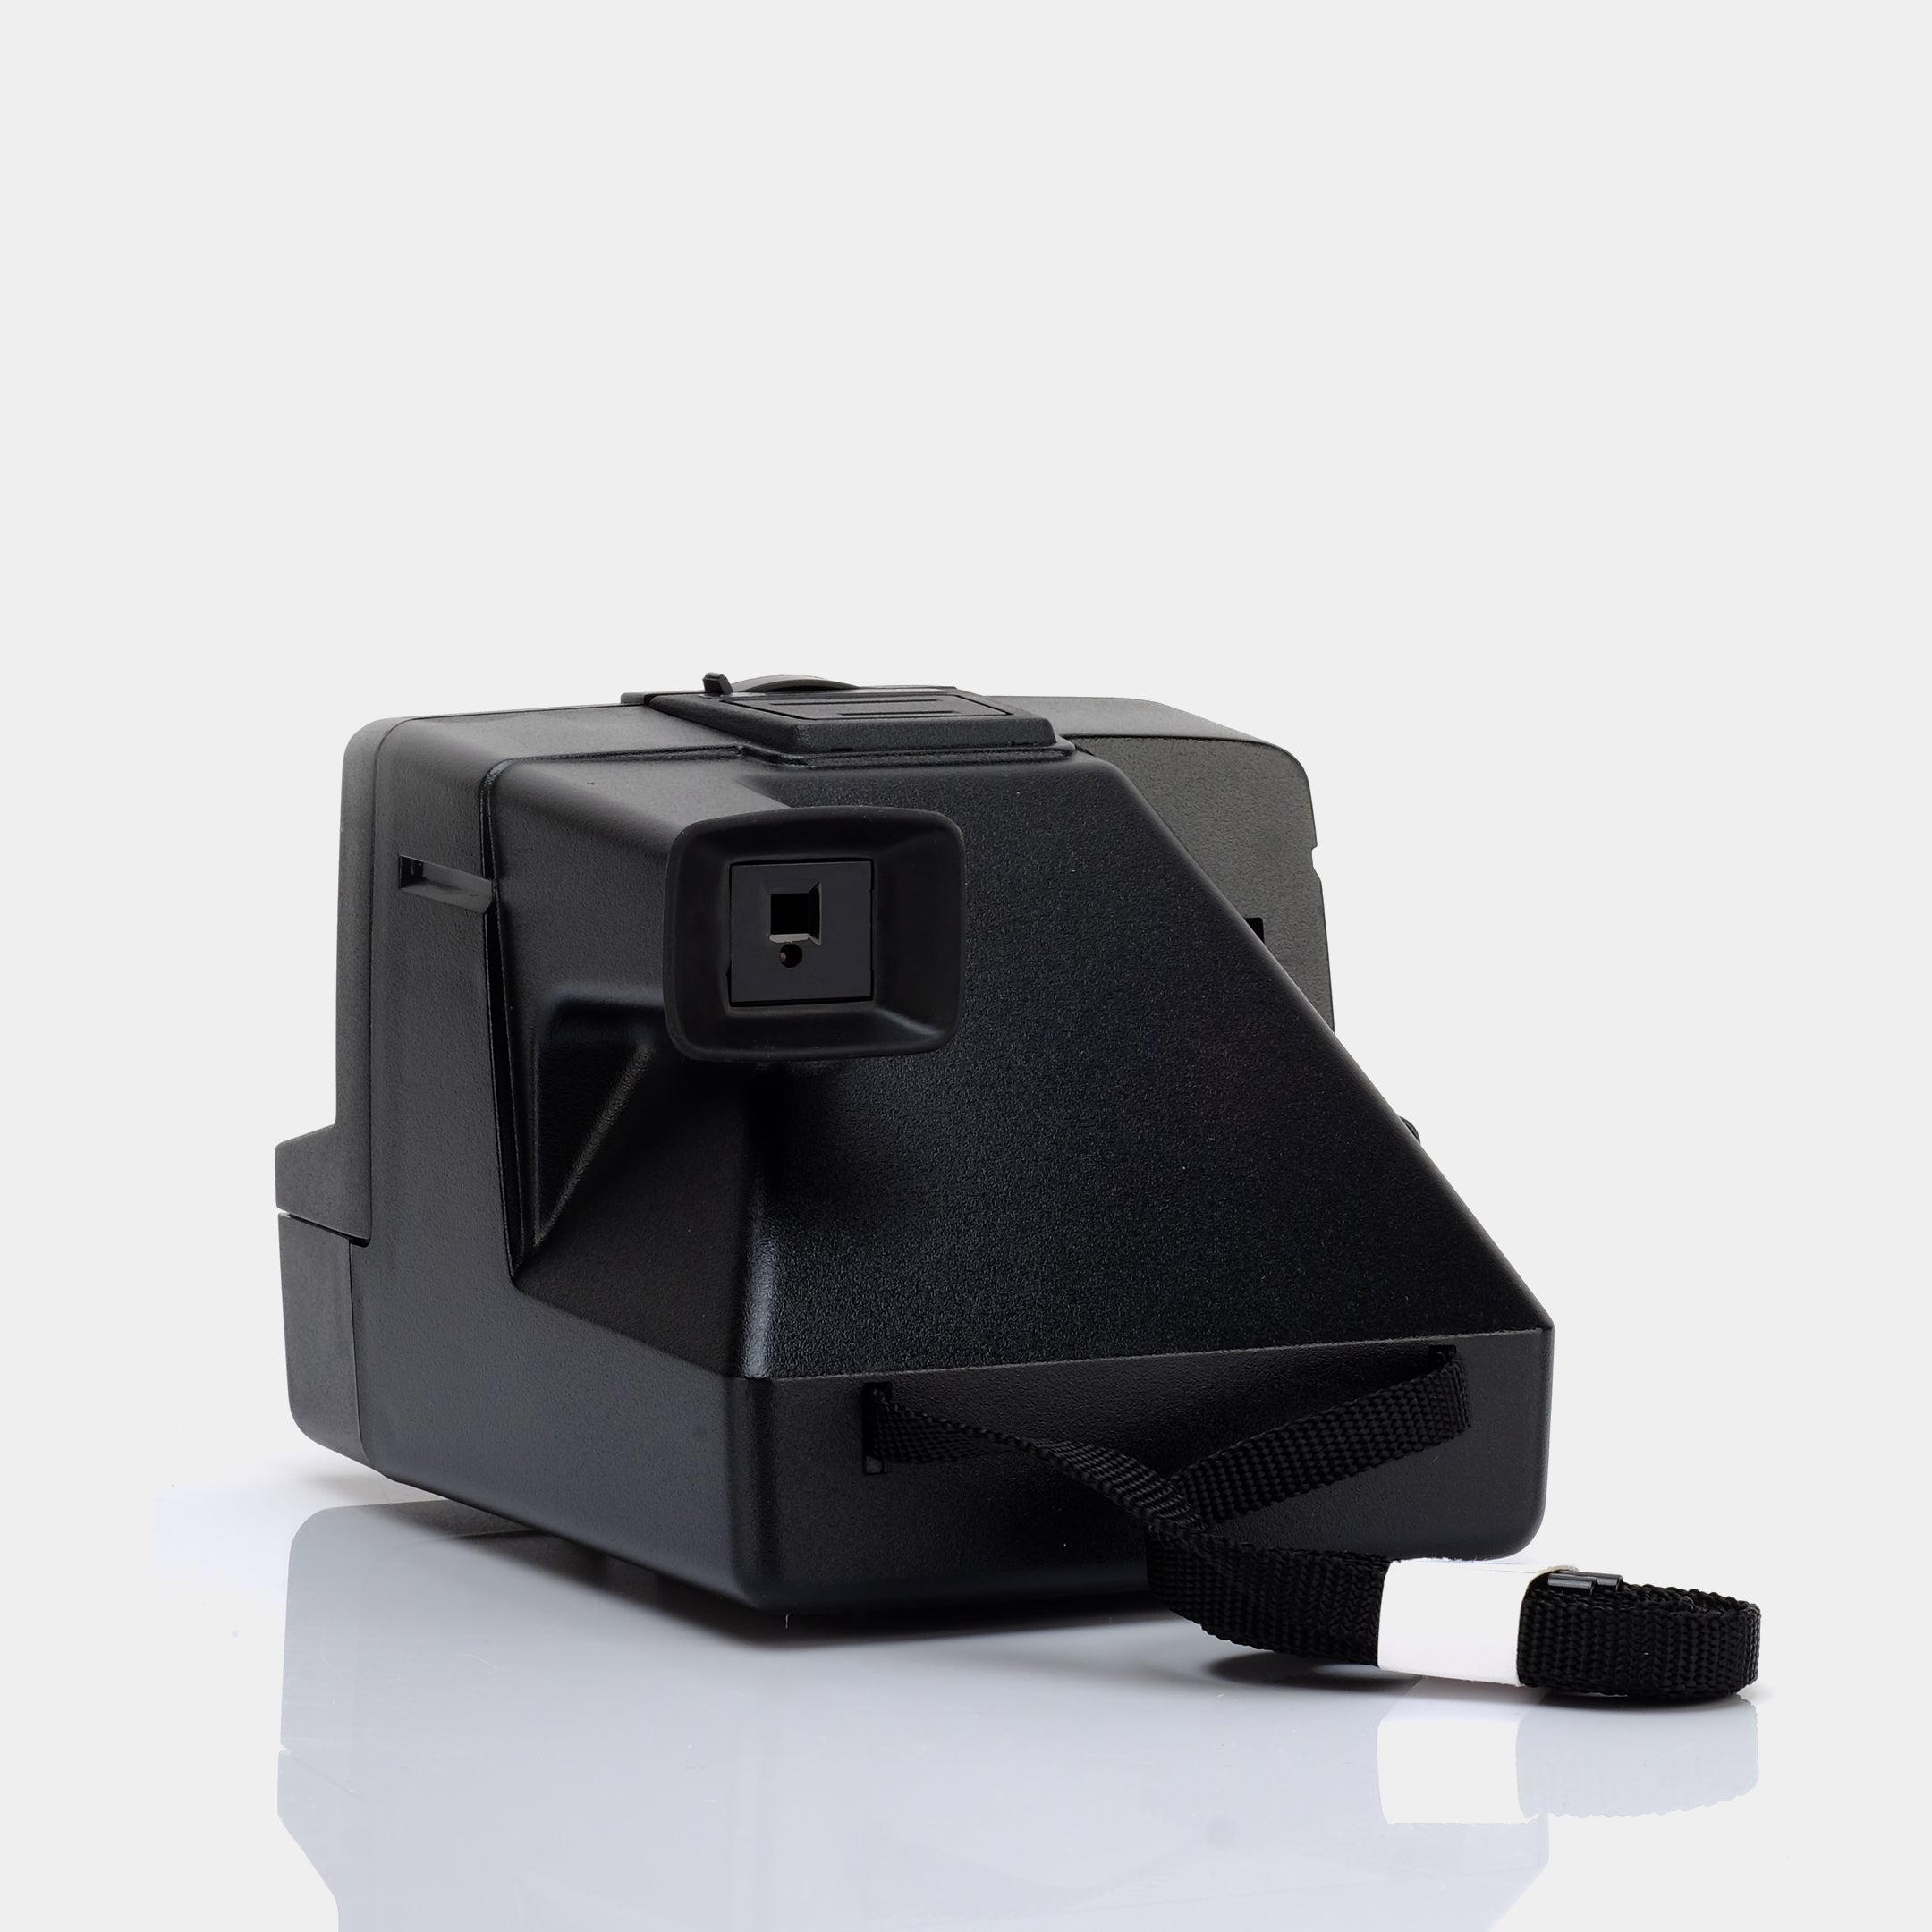 Polaroid SX-70 Revue Sonar AutoFocus Instant Film Camera